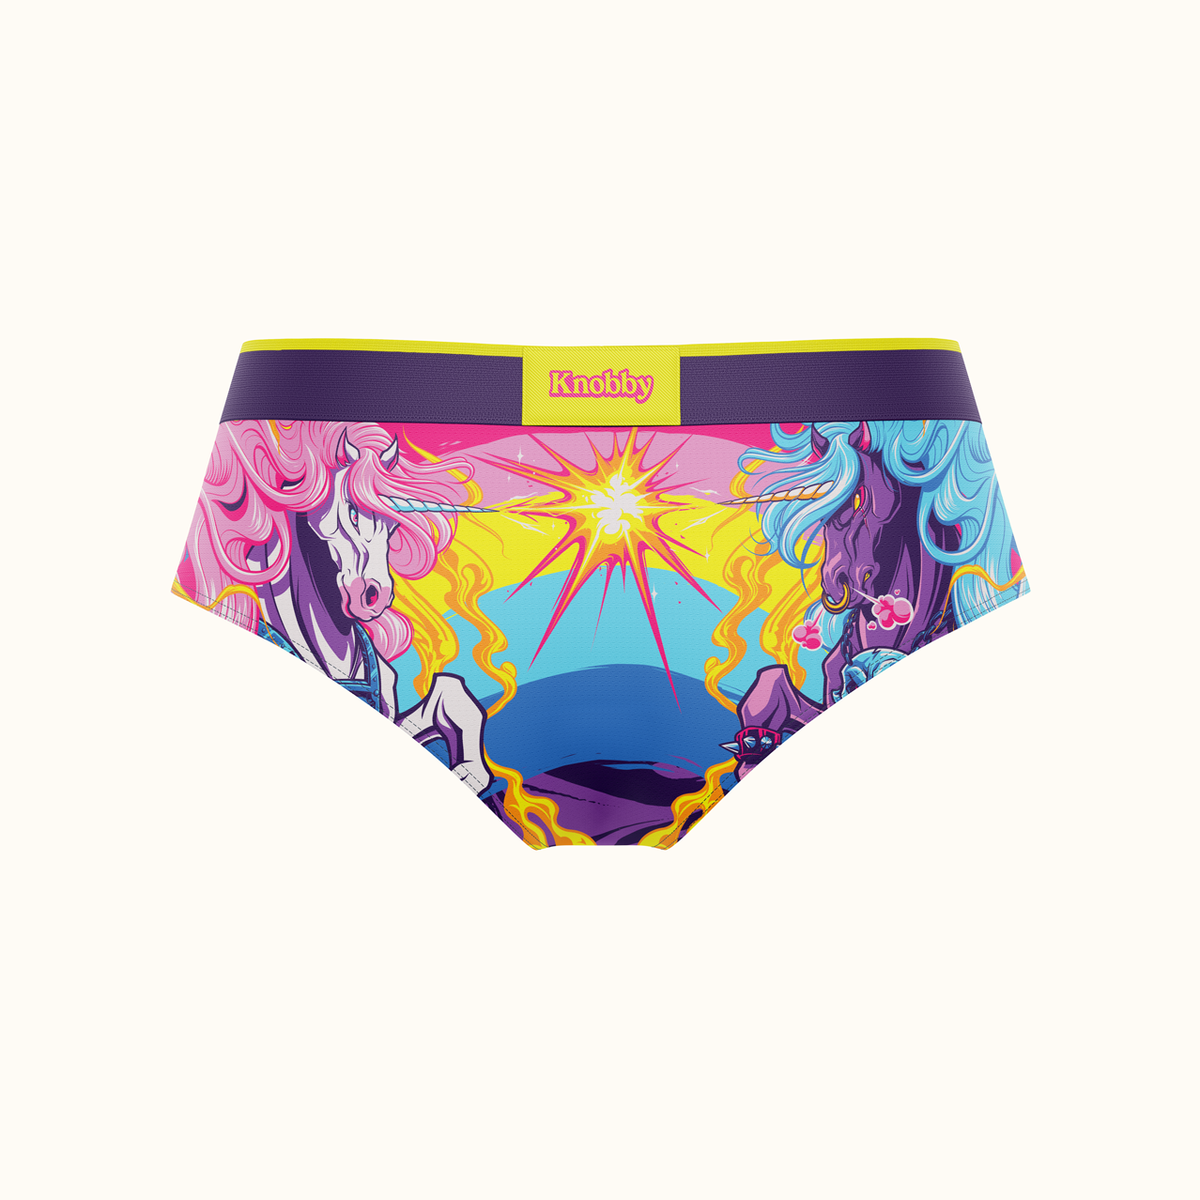 Knobby Underwear on X: Beach days are better in Knobby underwear